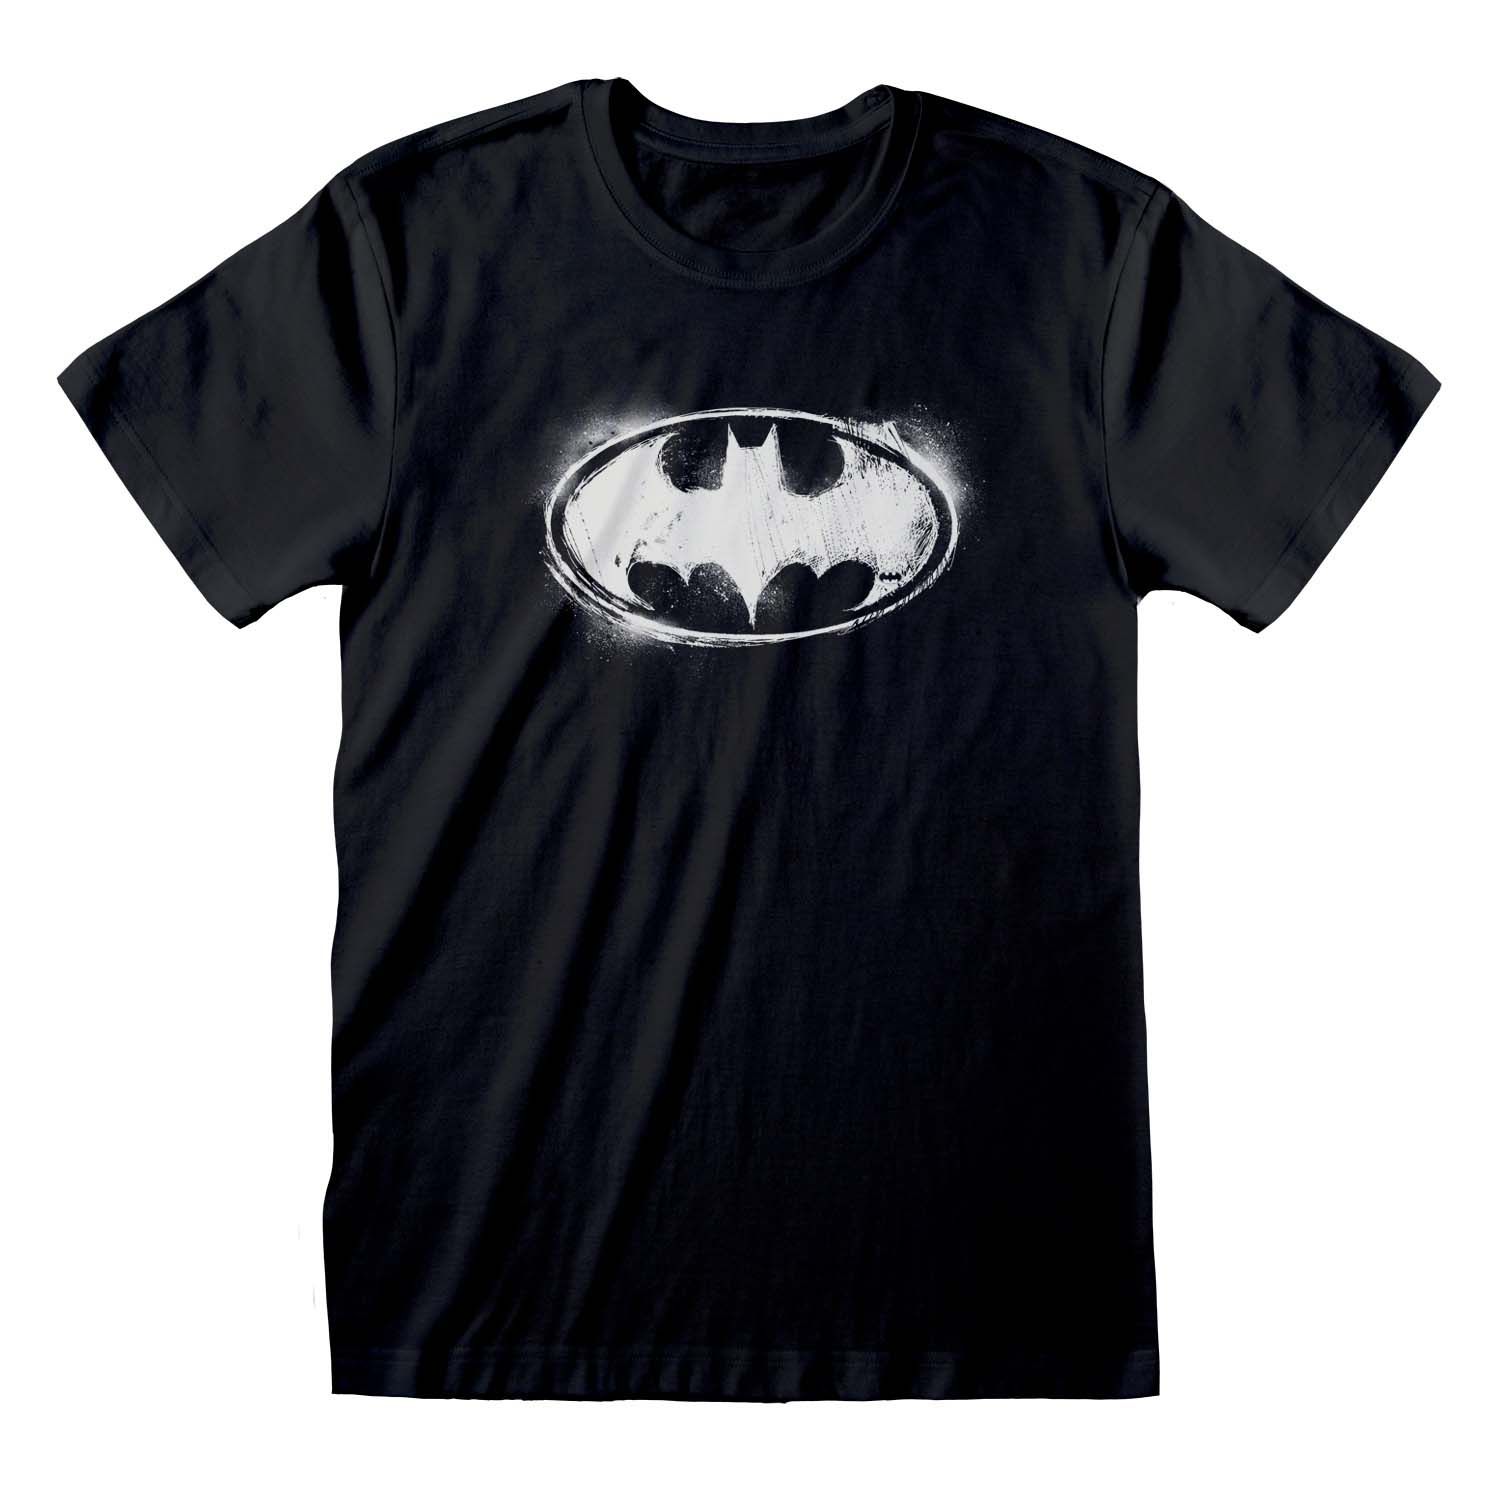 Sheldon Cooper's Batman Shirt: DC Comics Justice League Tshirt